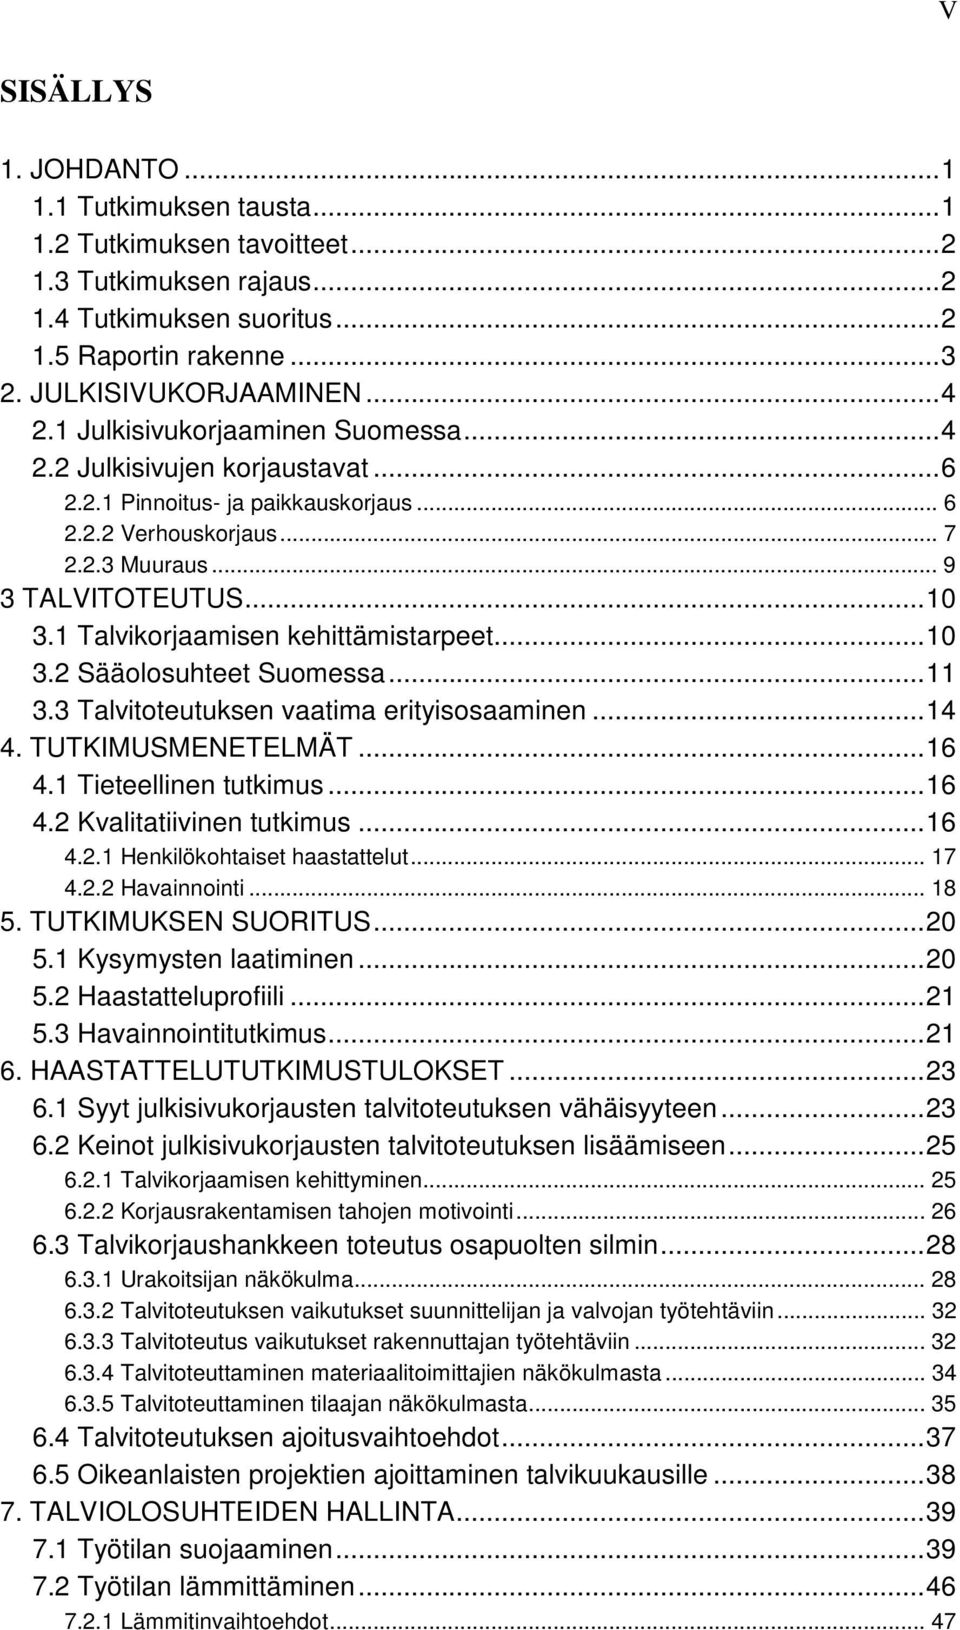 1 Talvikorjaamisen kehittämistarpeet...10 3.2 Sääolosuhteet Suomessa...11 3.3 Talvitoteutuksen vaatima erityisosaaminen...14 4. TUTKIMUSMENETELMÄT...16 4.1 Tieteellinen tutkimus...16 4.2 Kvalitatiivinen tutkimus.